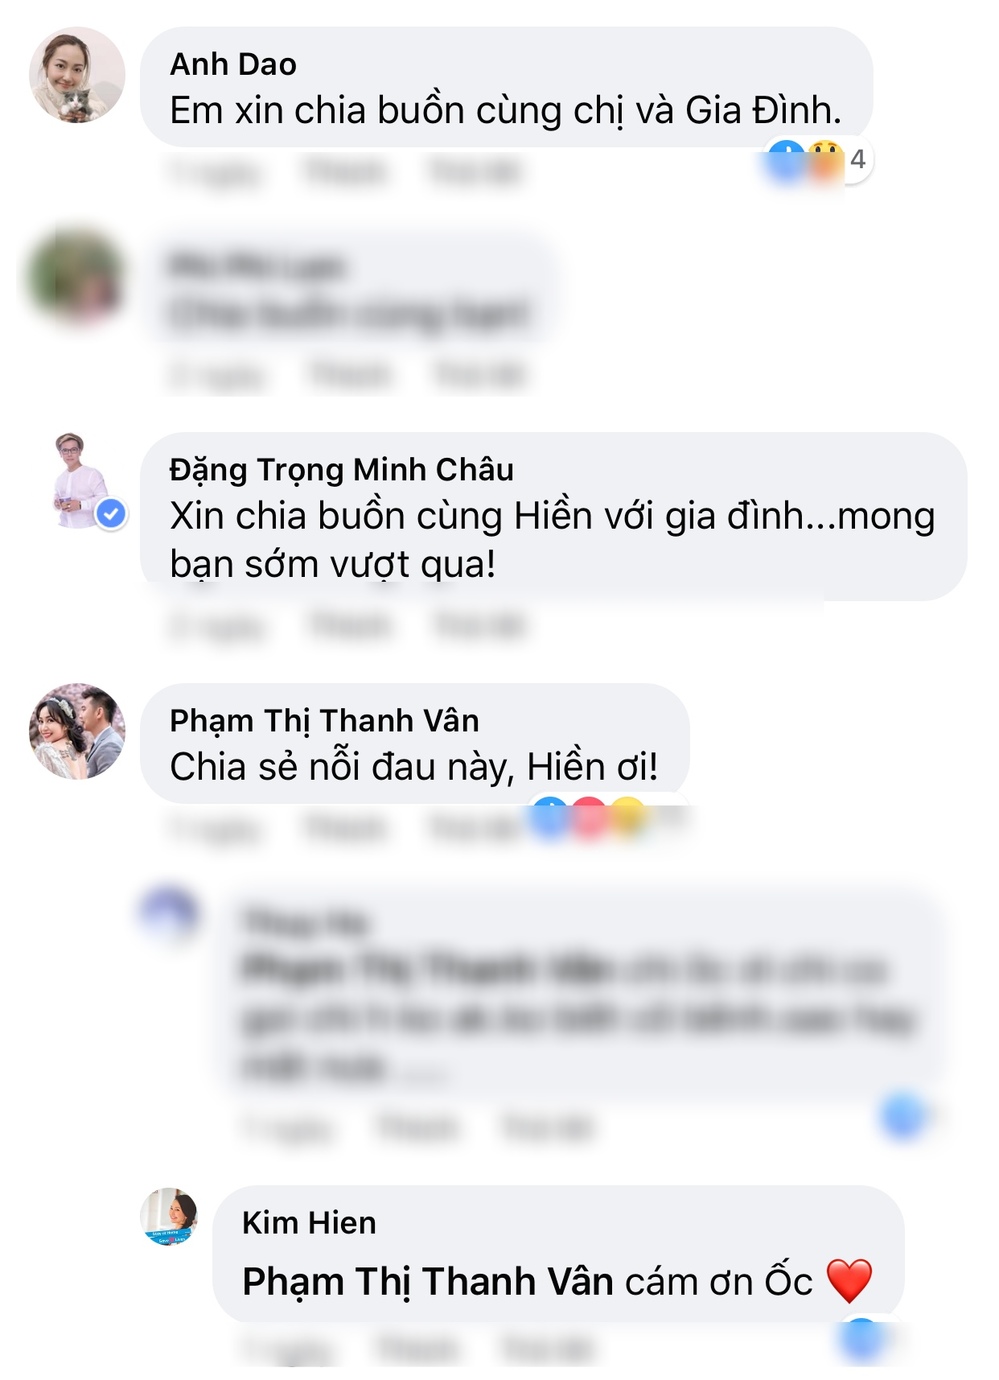  
Phía dưới bài đăng của Kim Hiền nhiều sao Việt như Ốc Thanh Vân, nữ diễn viên Anh Đào, NTK Minh Châu gửi lời chia buồn đến cô - Tin sao Viet - Tin tuc sao Viet - Scandal sao Viet - Tin tuc cua Sao - Tin cua Sao